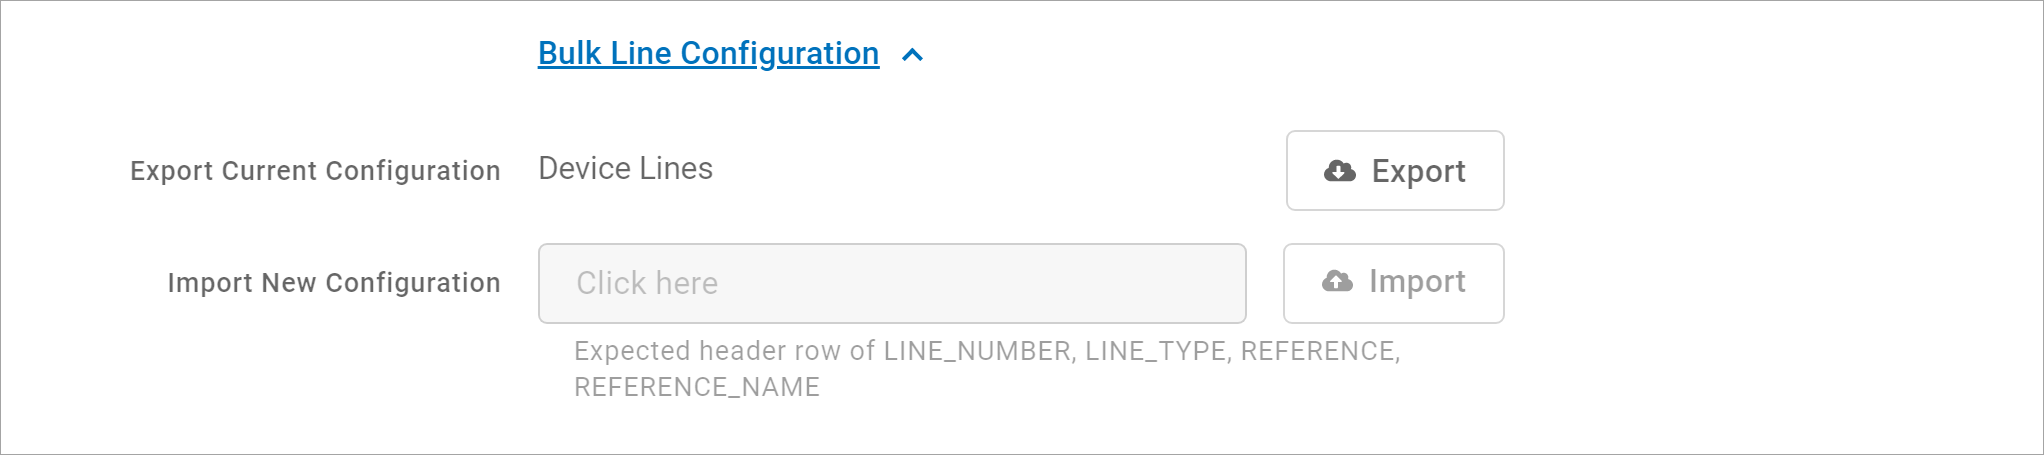 Bulk_Line_Configuration.png